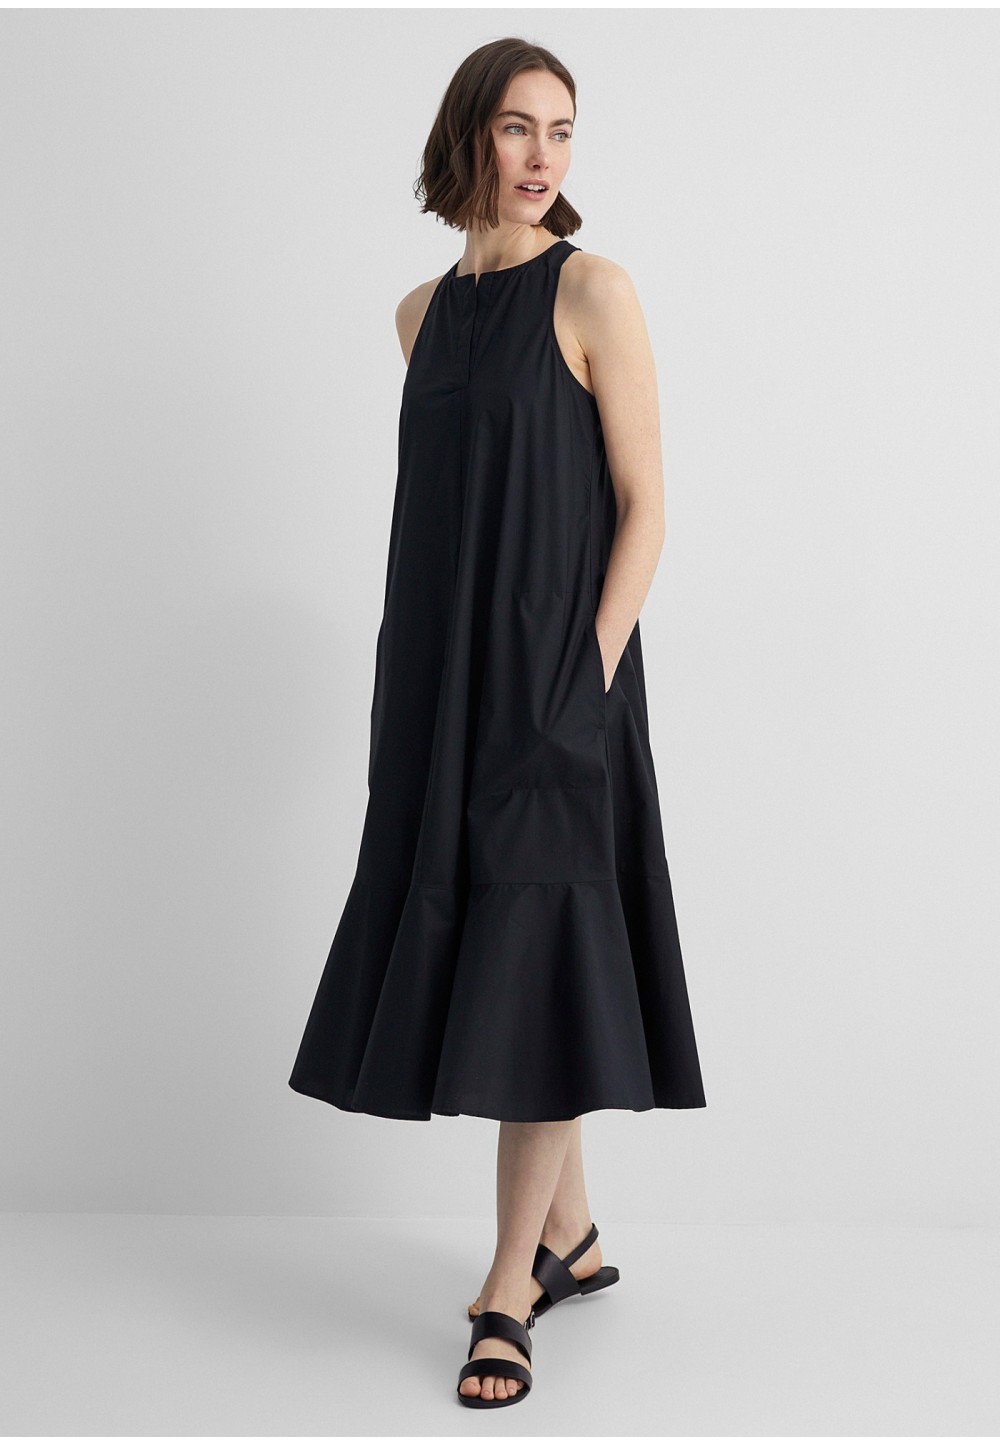 Чёрное женственное платье  ABIGALE с воланом